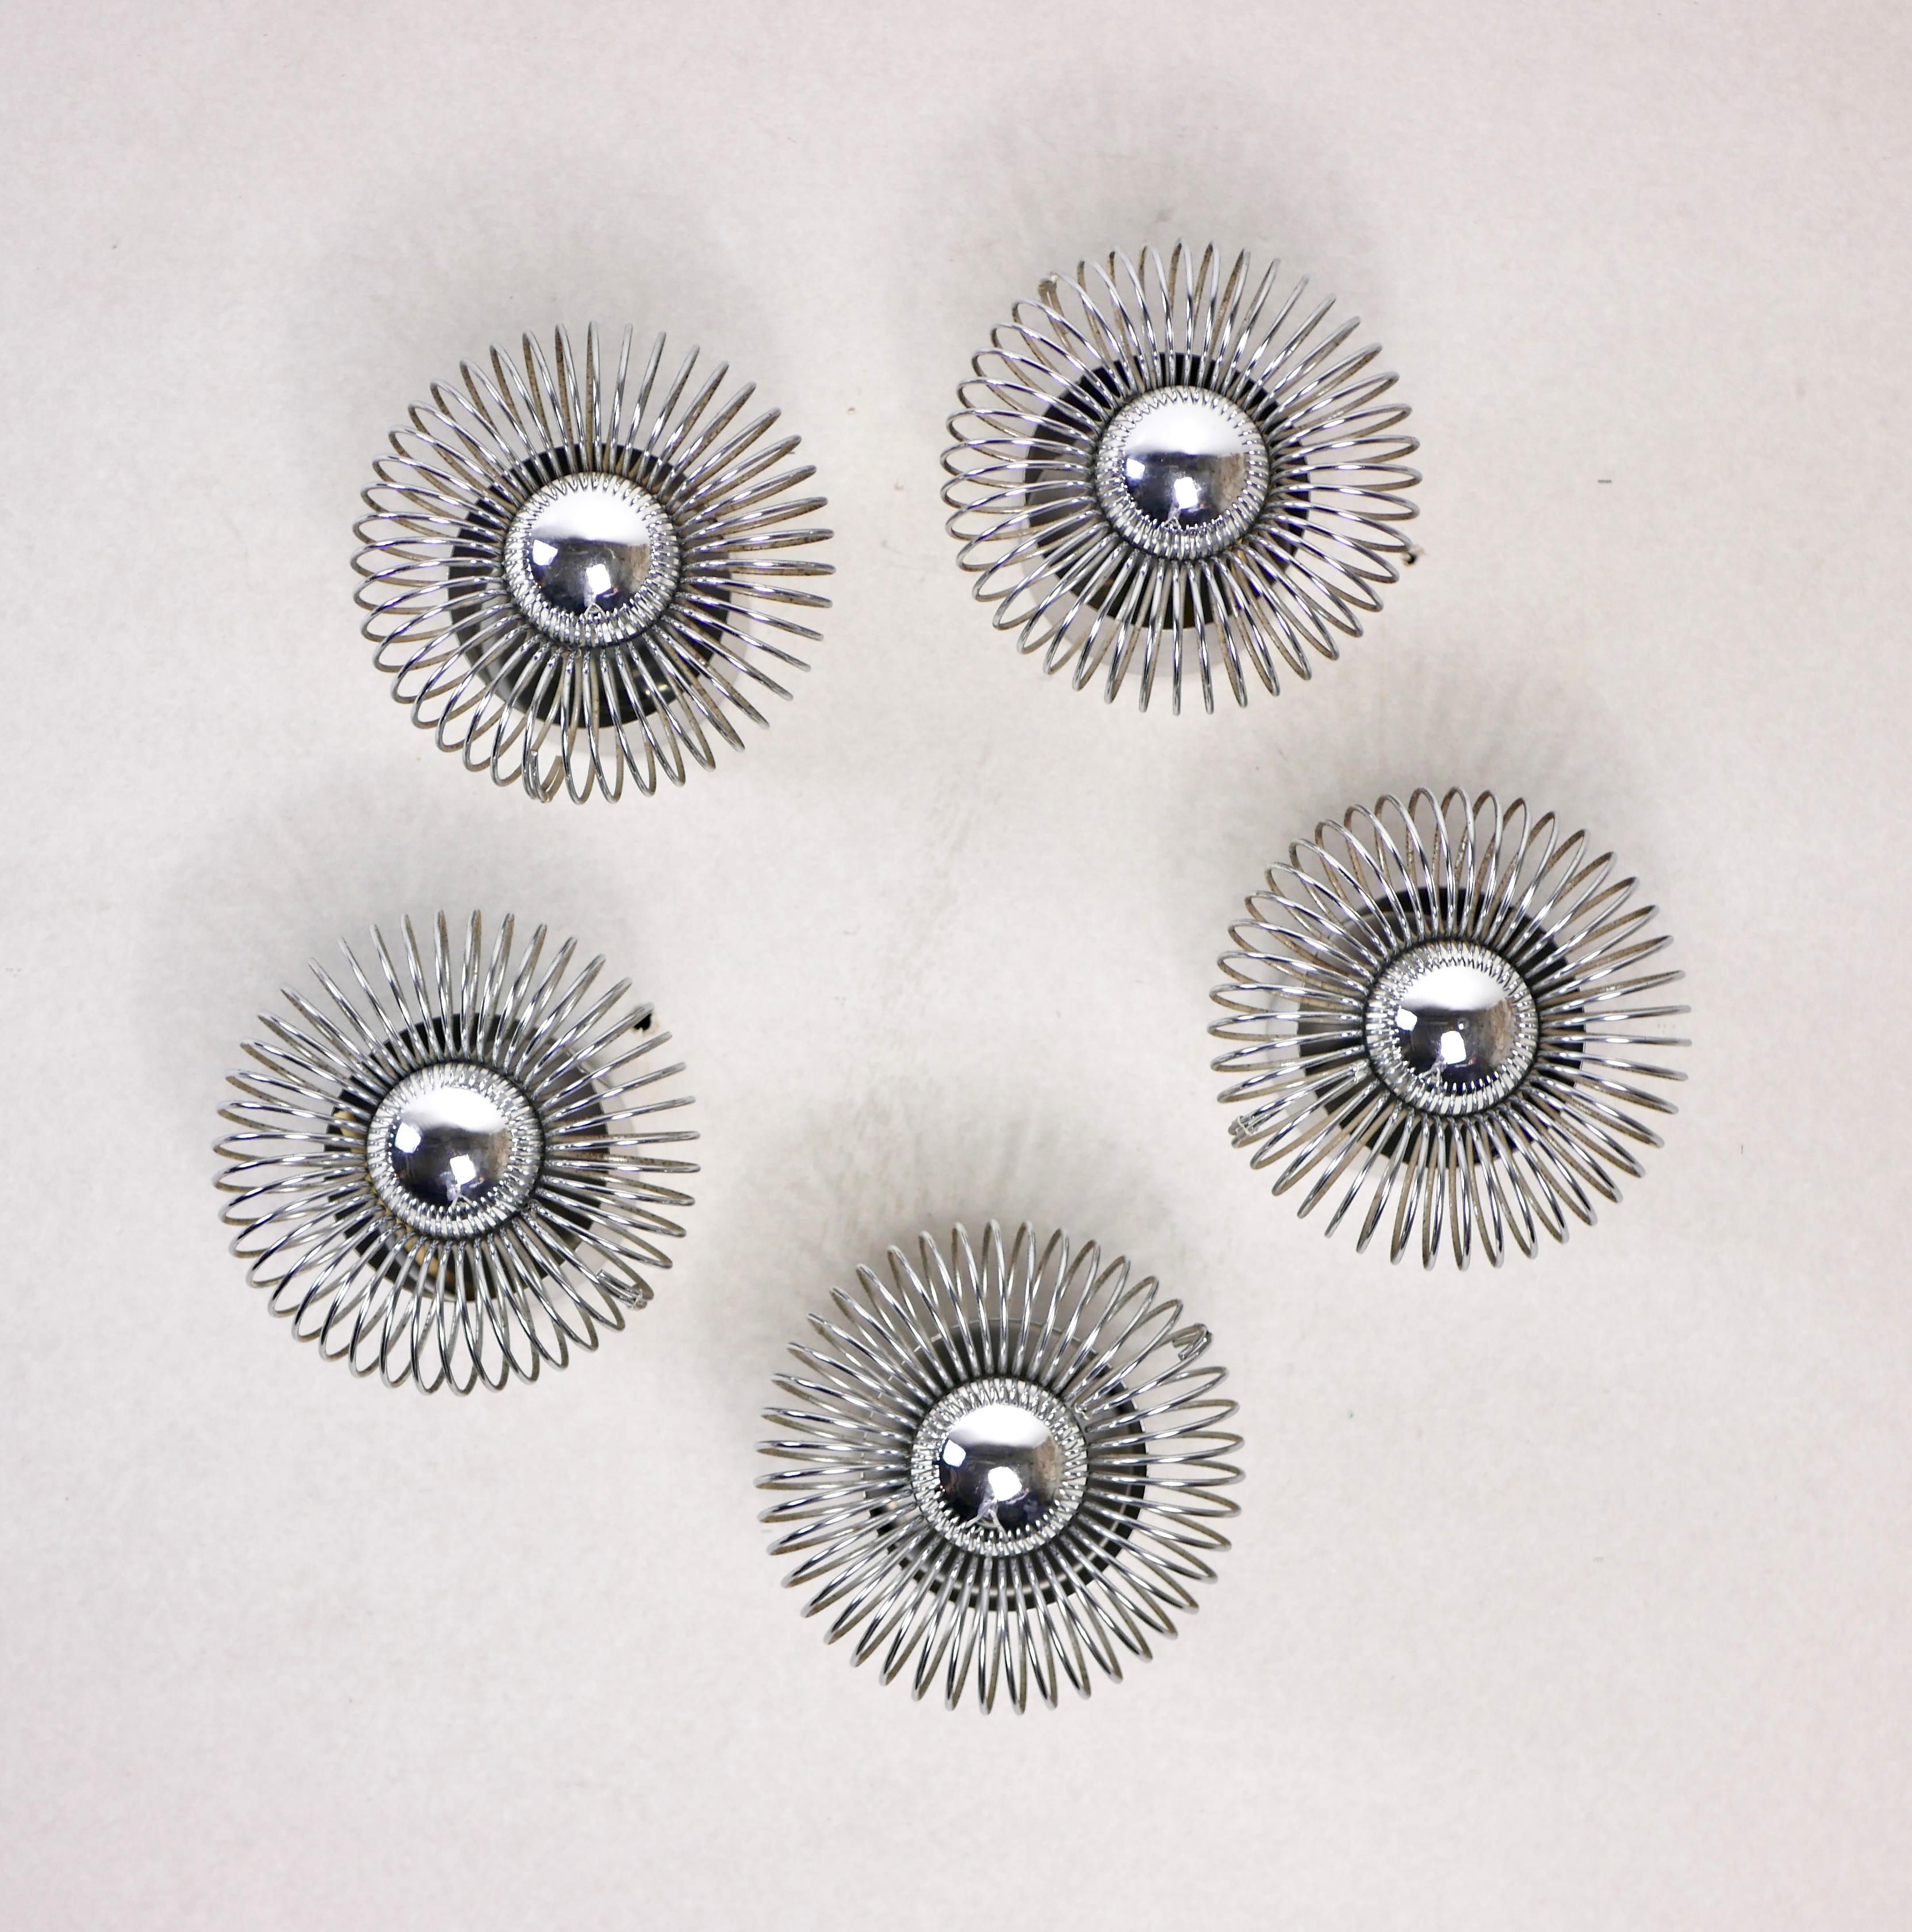 Ensemble de 5 appliques en métal à ressort conçues par Philippe Rogier pour la Galerie Oxar, fabriquées en France dans les années 1970.
Bon état, ampoules non incluses.
Vendus séparément ou ensemble.
Dimensions : D16, Profondeur 14cm